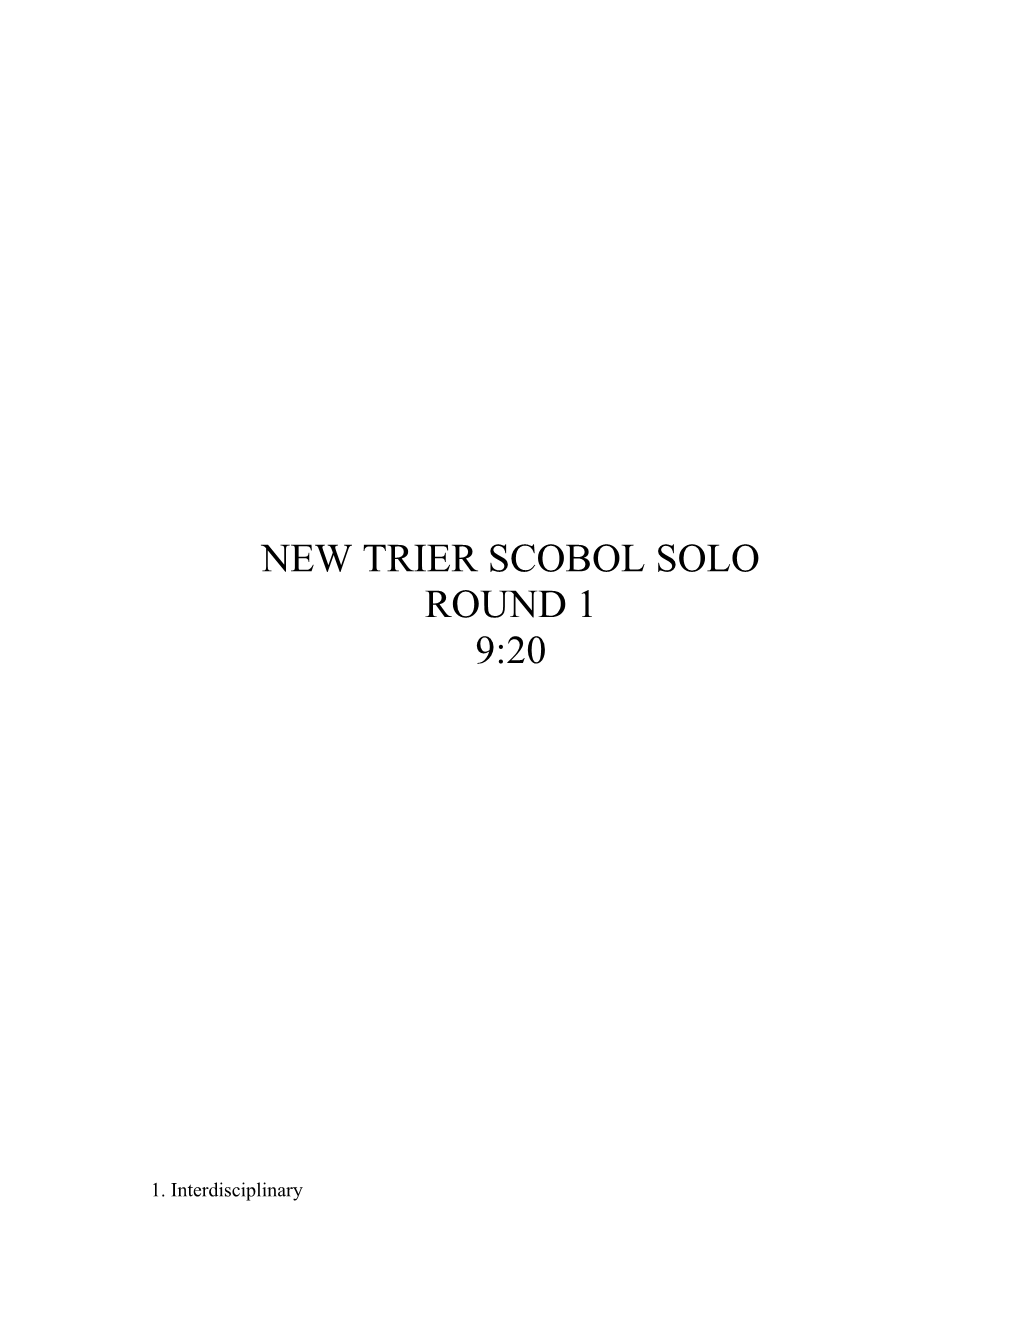 New Trier Scobol Solo